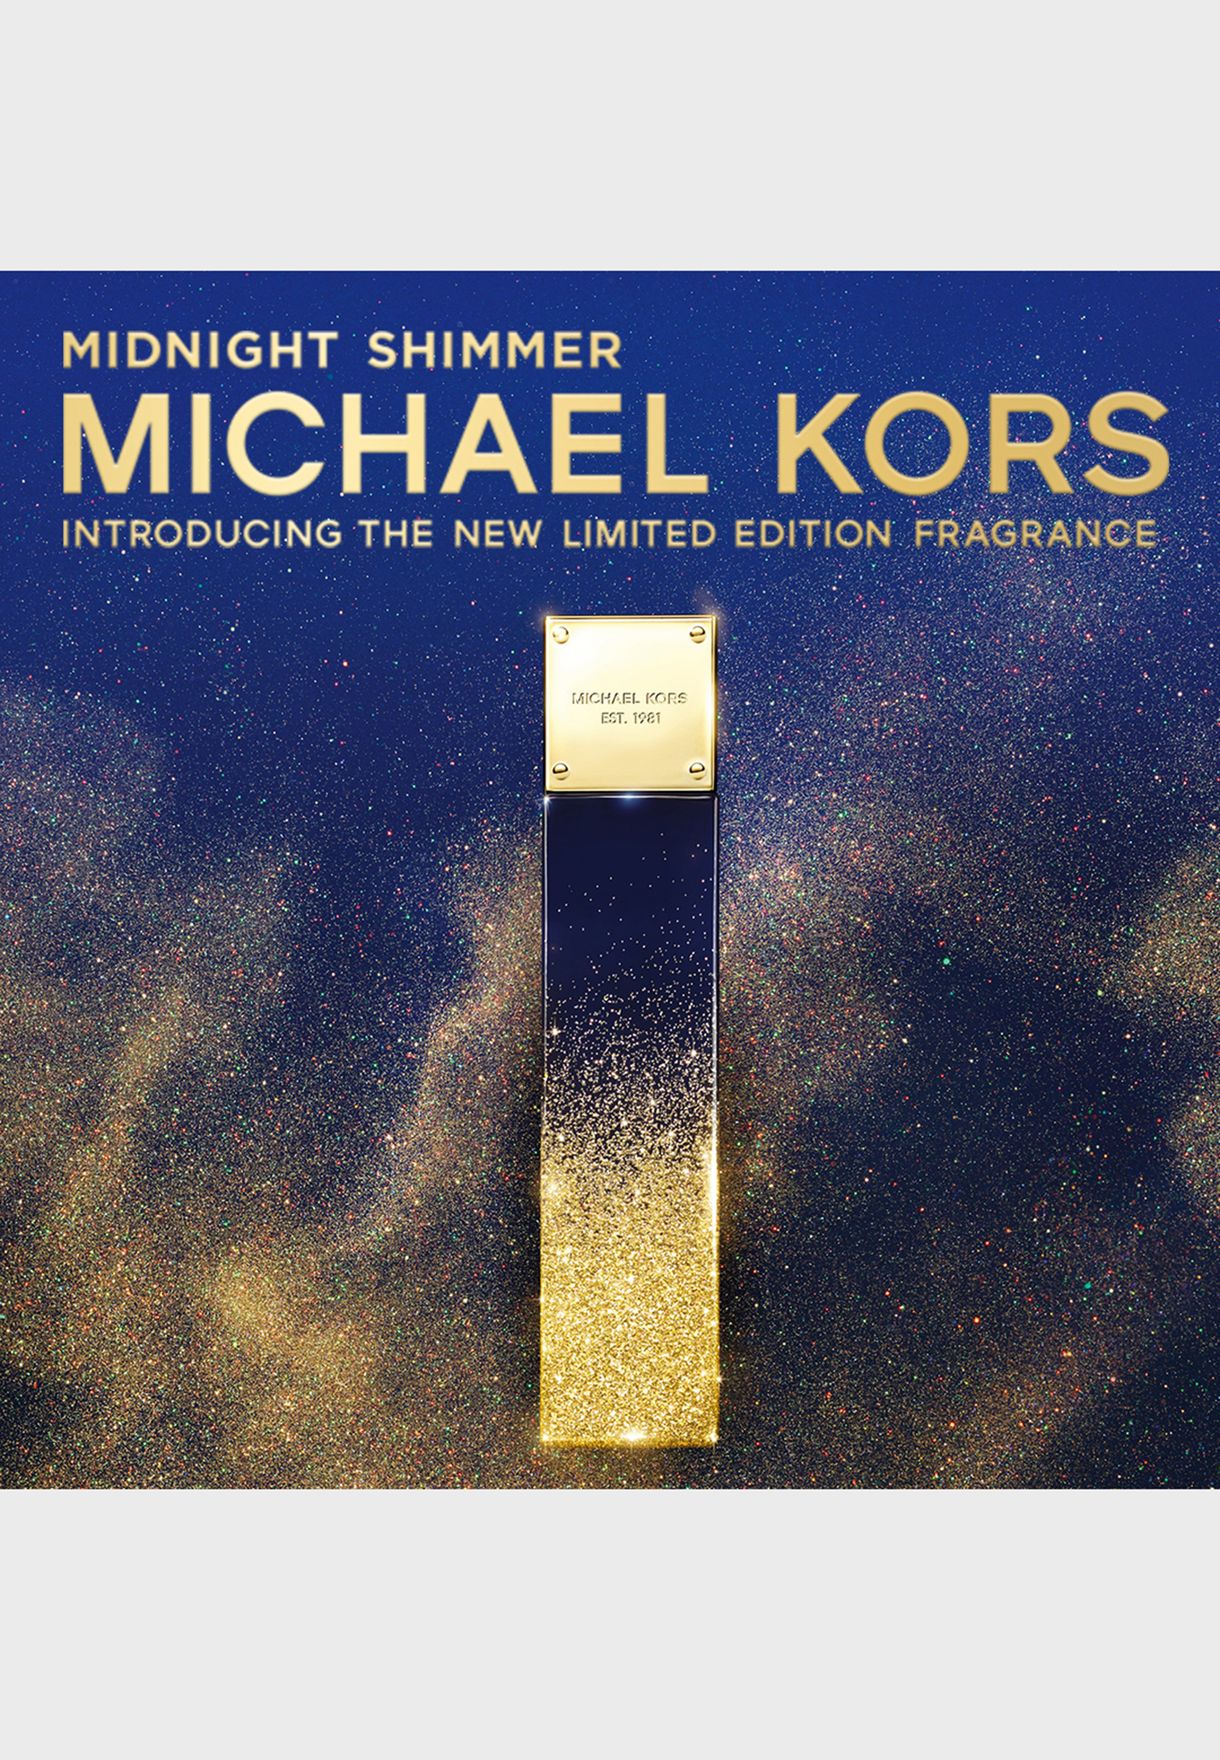 michael kors midnight shimmer 100ml